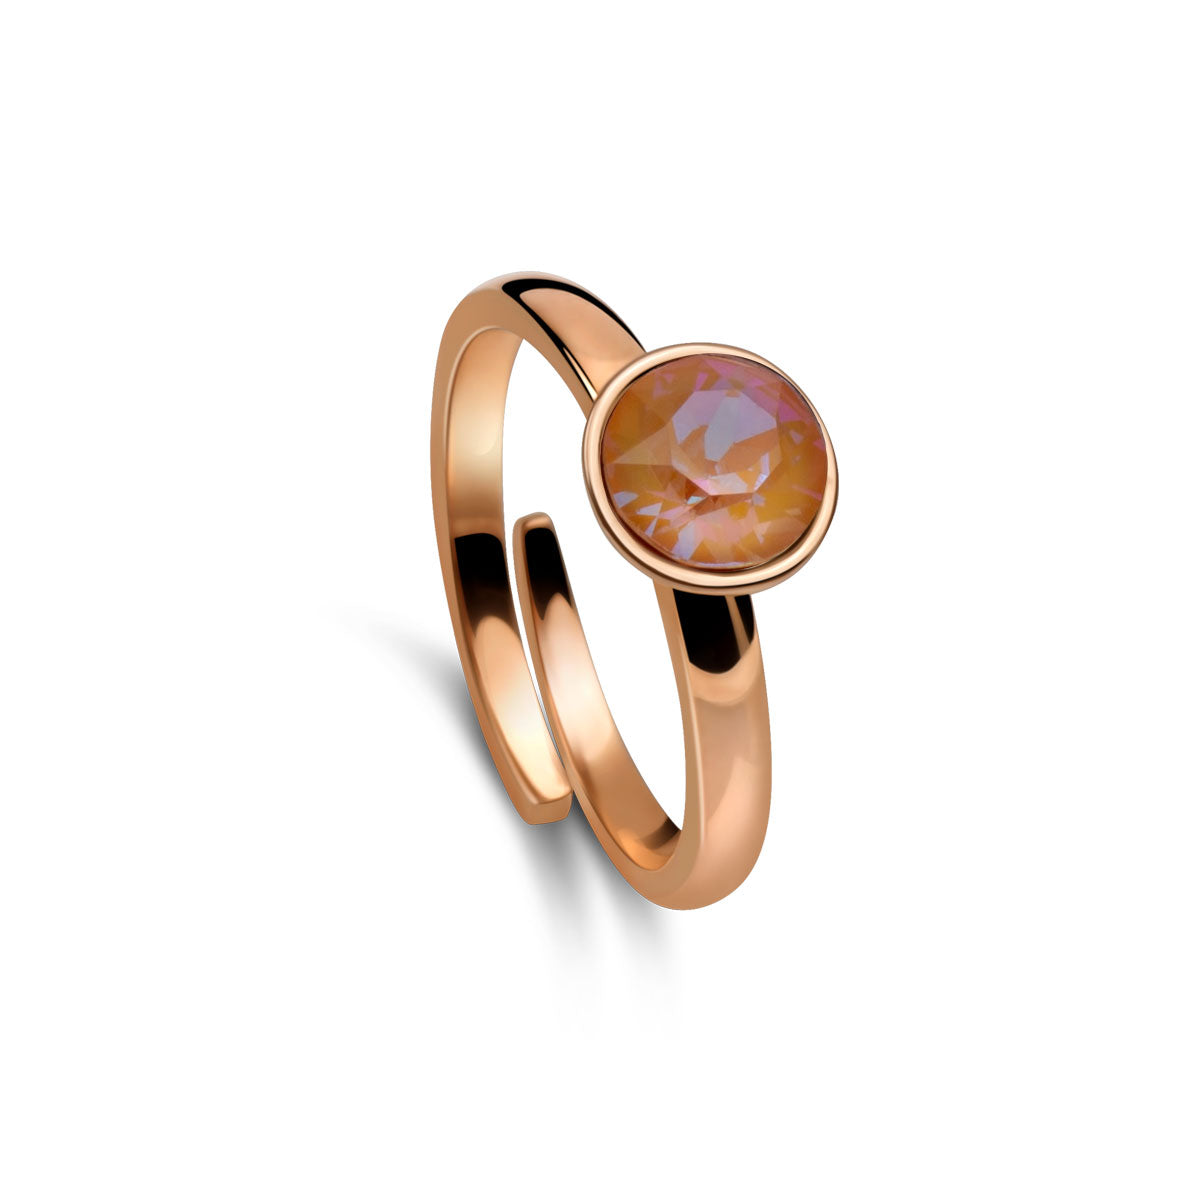 Ring 925 Silber orange verstellbar#oberflache_rosevergoldet